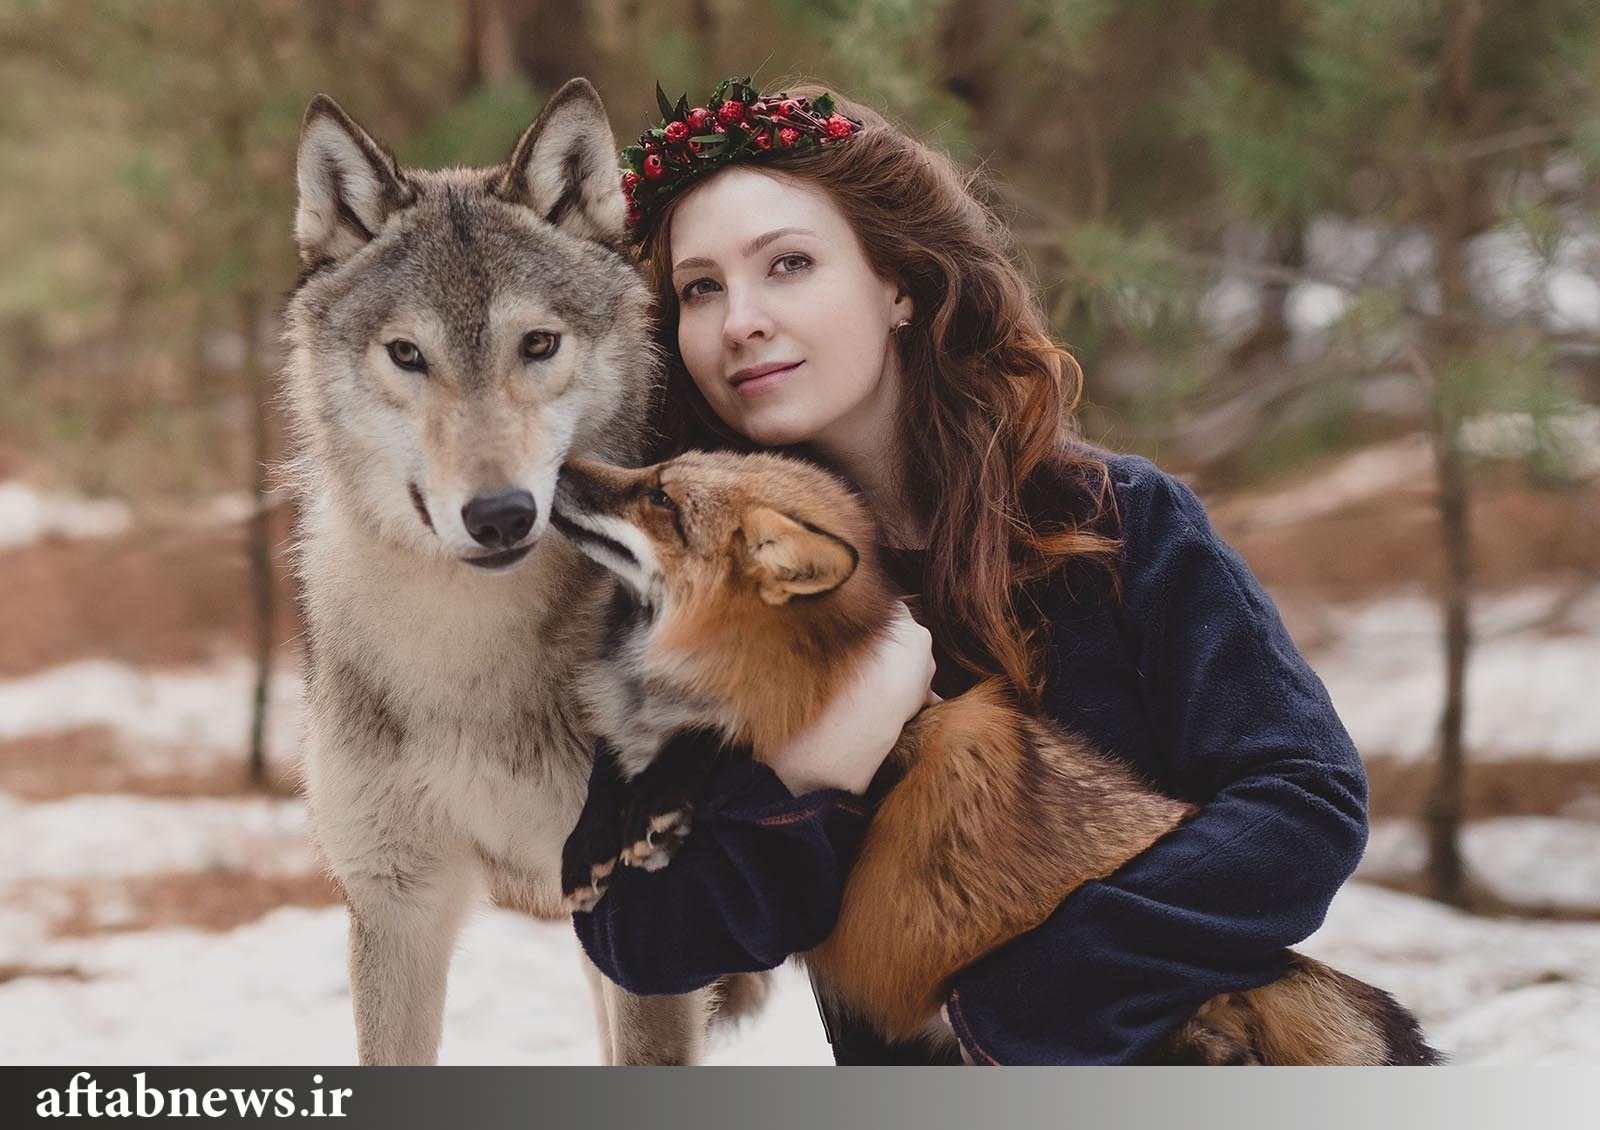 Girl two dog. Девушка с волком. Фотосессия с волком. Люди и животные.